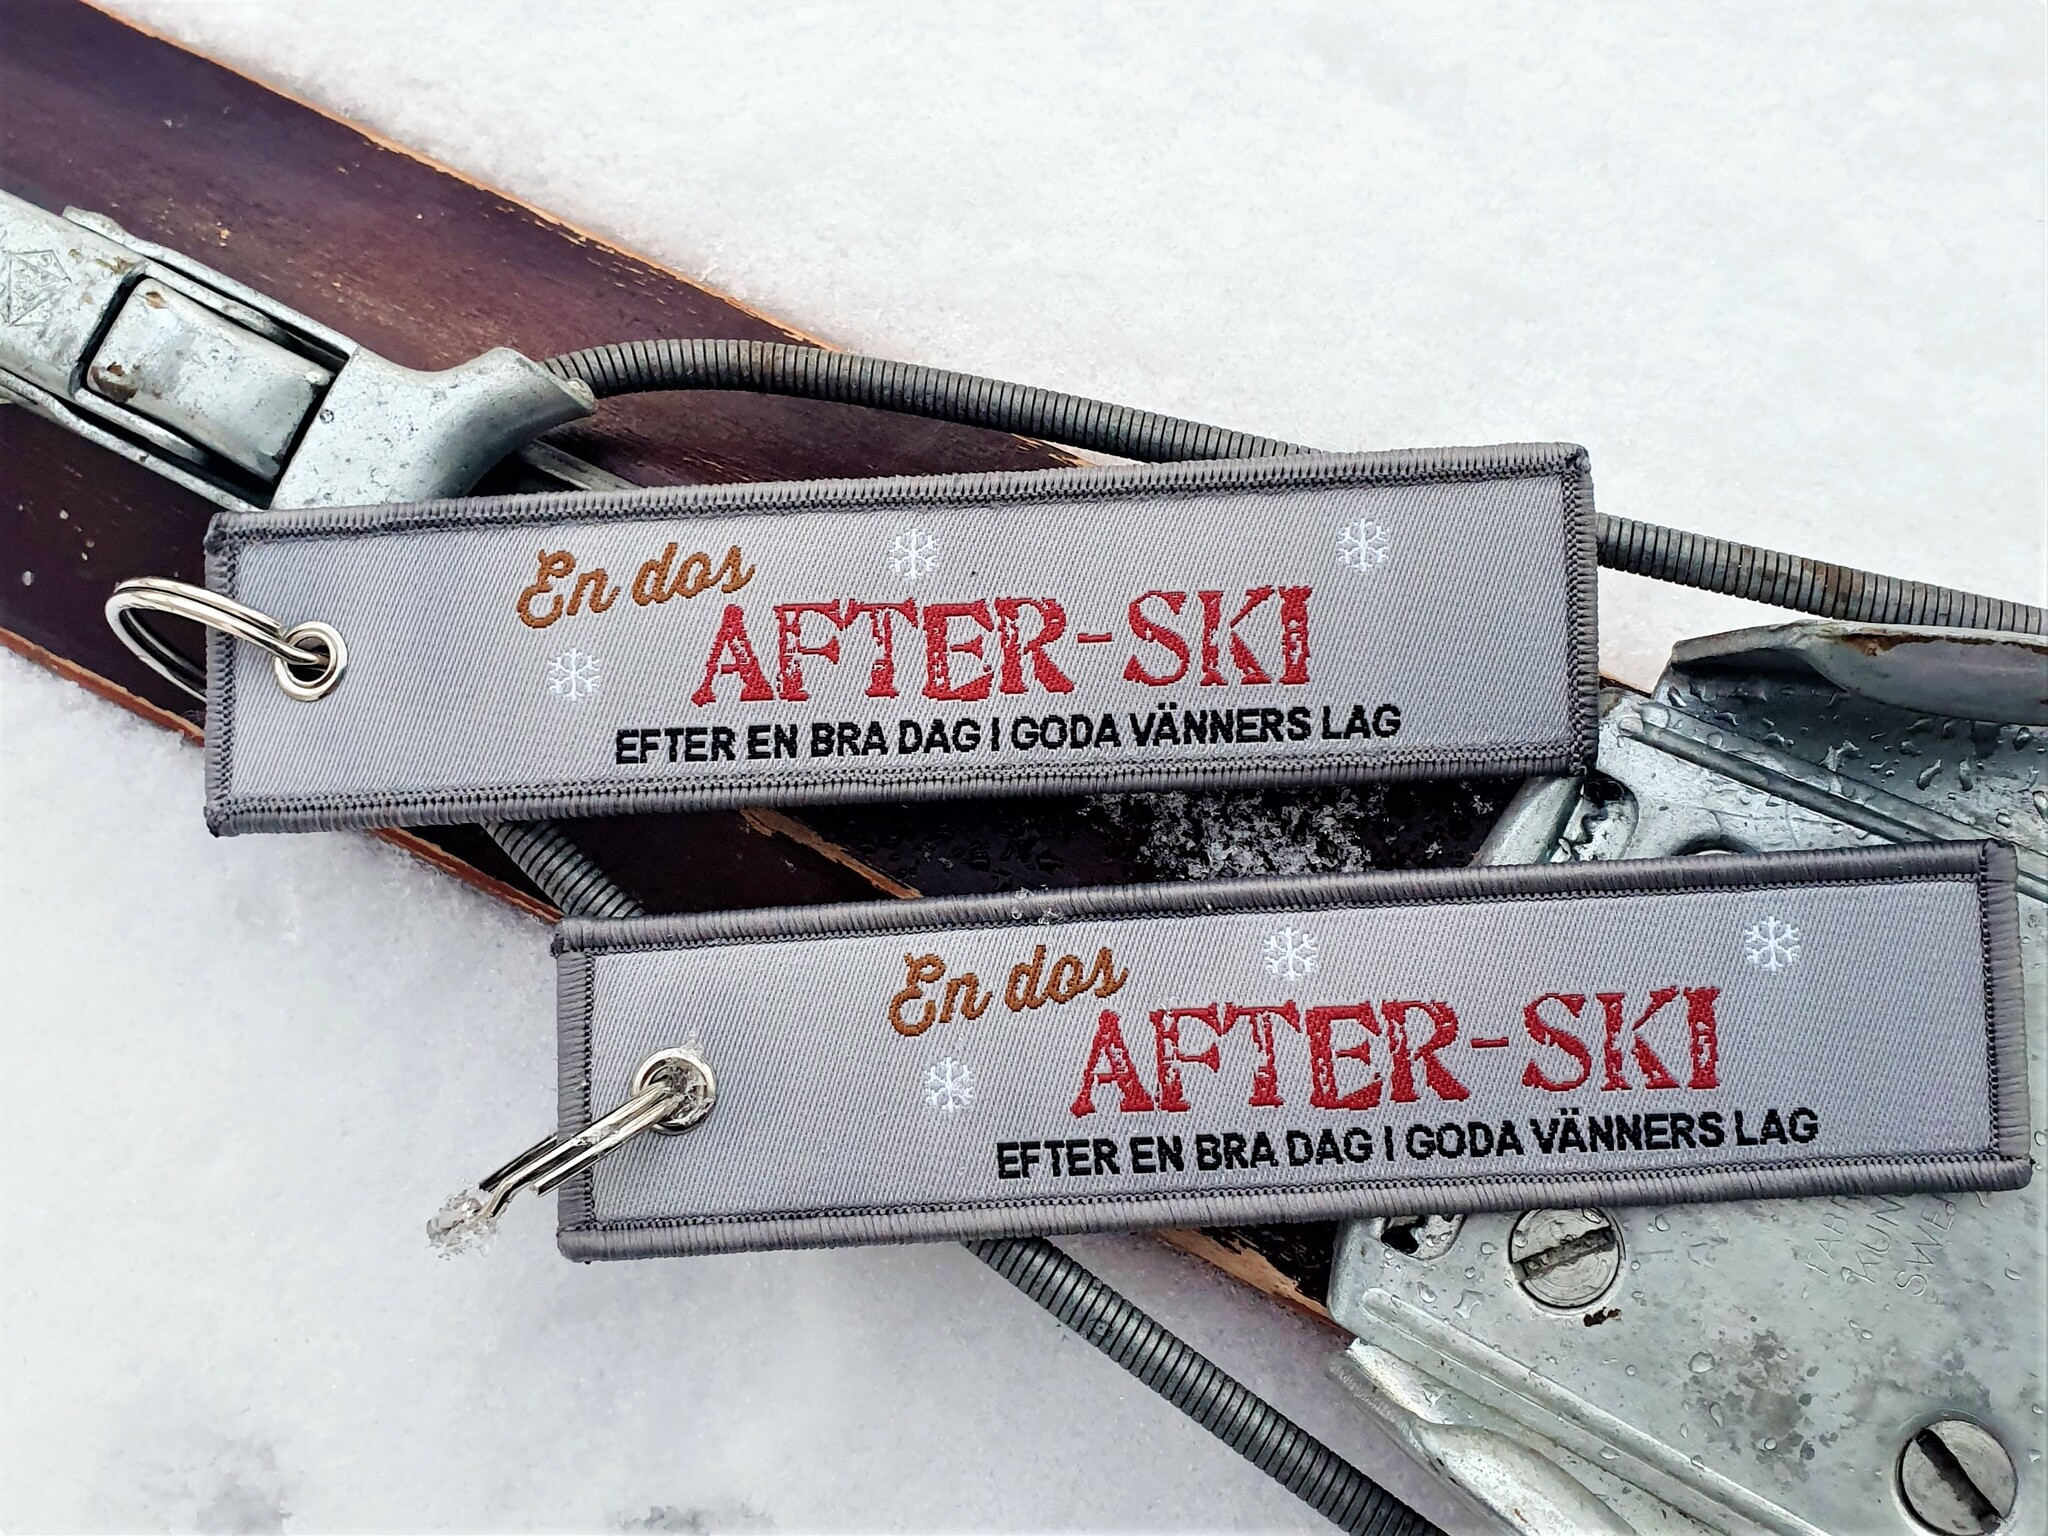 After ski Tag/nyckelring